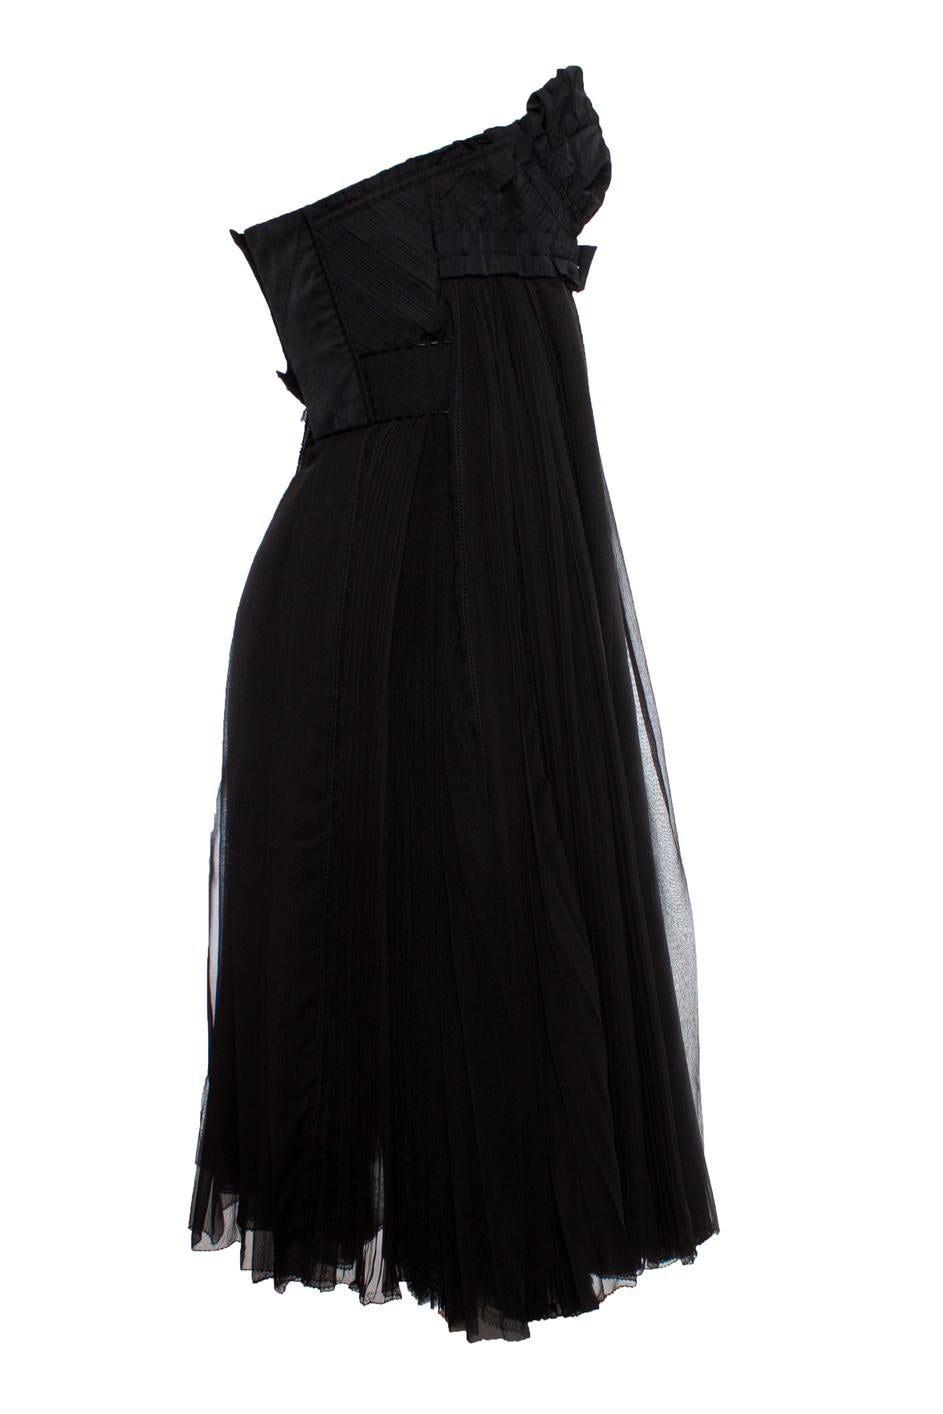 Louis Vuitton, schwarzes Cocktailkleid mit Bustier und Schleife um die Taille. Das Kleid hat einen kurzen Rückenverschluss und Striche am Rock. Der Artikel wurde wenig getragen und ist in sehr gutem Zustand.

- • CONDIT: sehr guter Zustand

- •